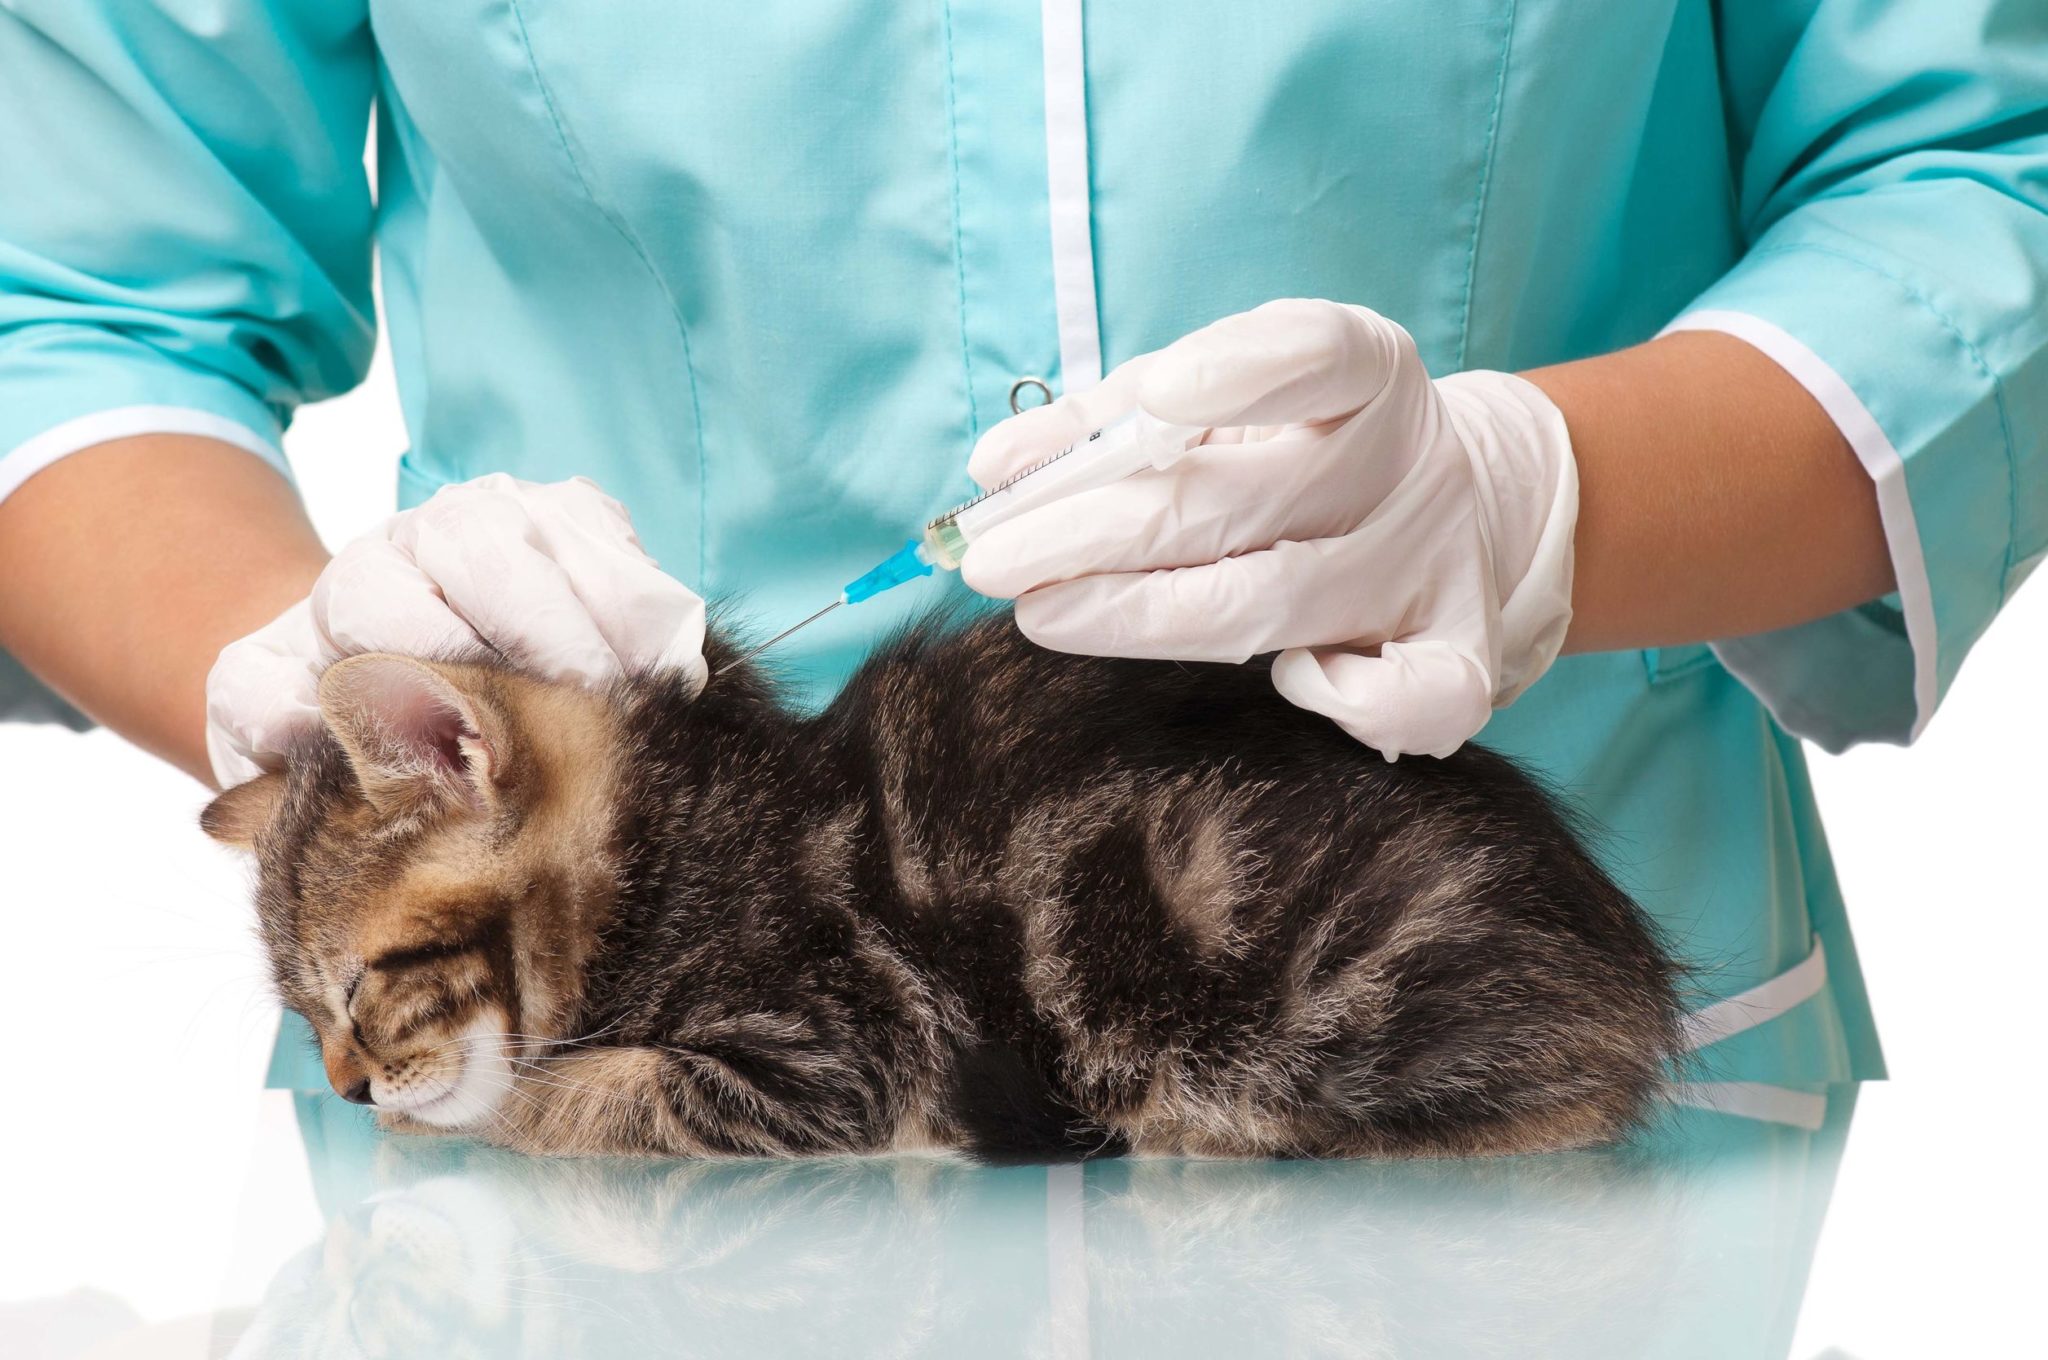 Бесплатные прививки для кошек в москве. Вакцинация кошек. Прививка от бешенства кошке. Прививка для кошек. Укол кошке.